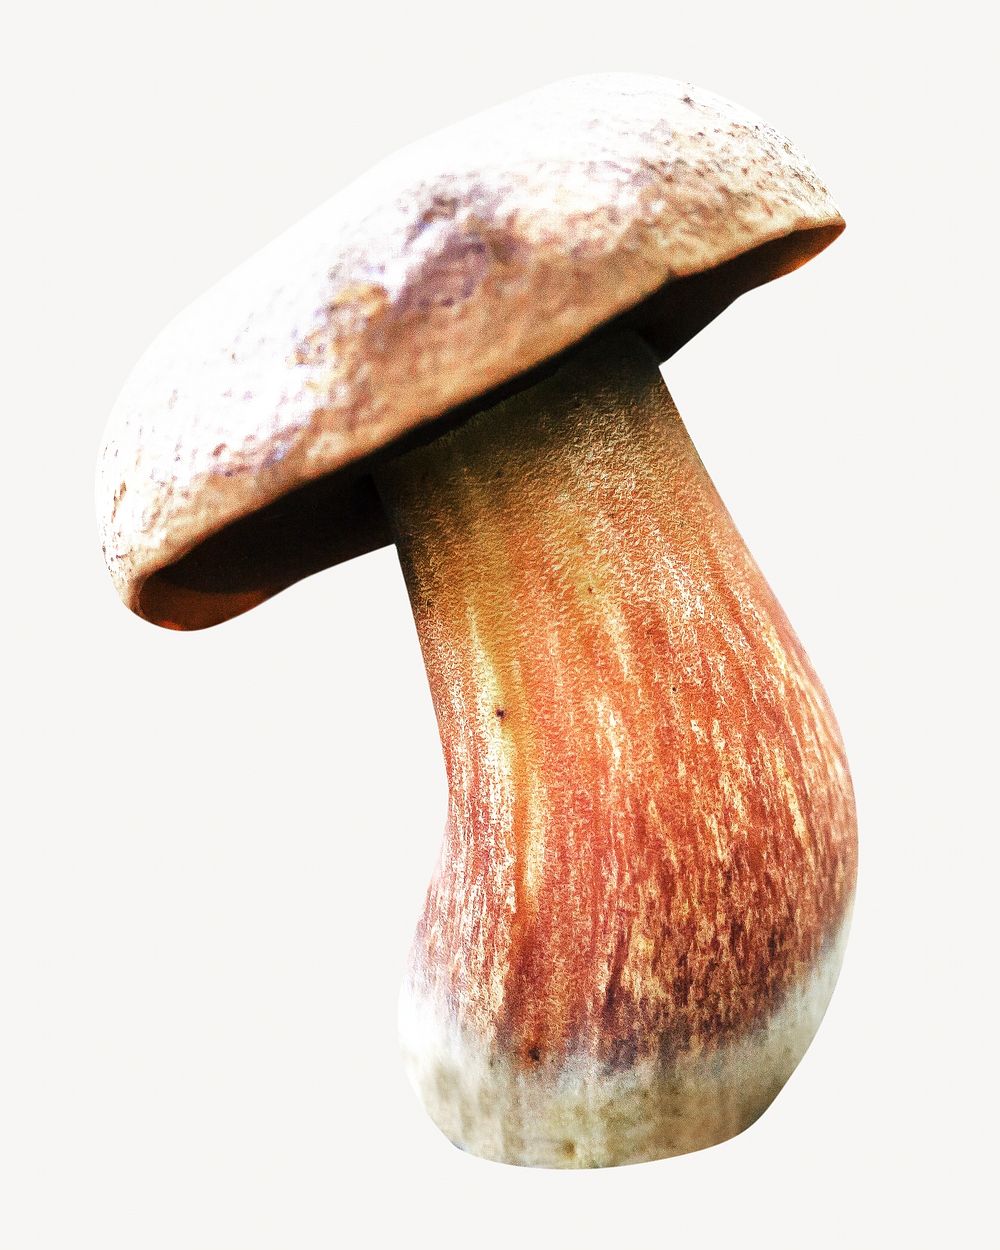 Brown mushroom isolated image